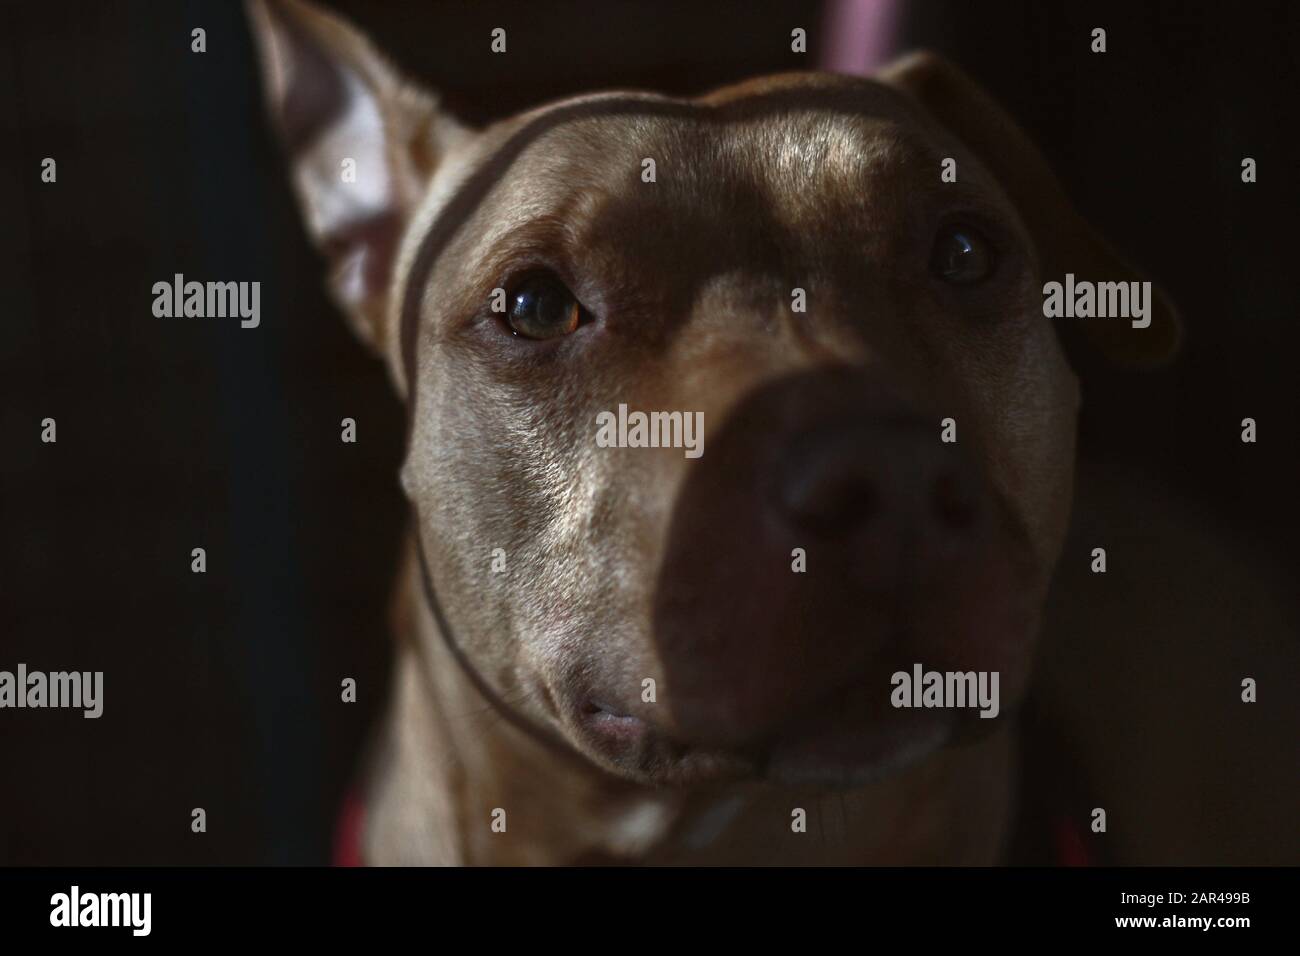 Dies ist ein Foto eines Traurigen Pitbull, um Tiermissbrauch und Grausamkeit ins Bewusstsein zu rücken. Der Hundename ist Molly, eine Rettungs- und Erfolgsgeschichte. Stockfoto